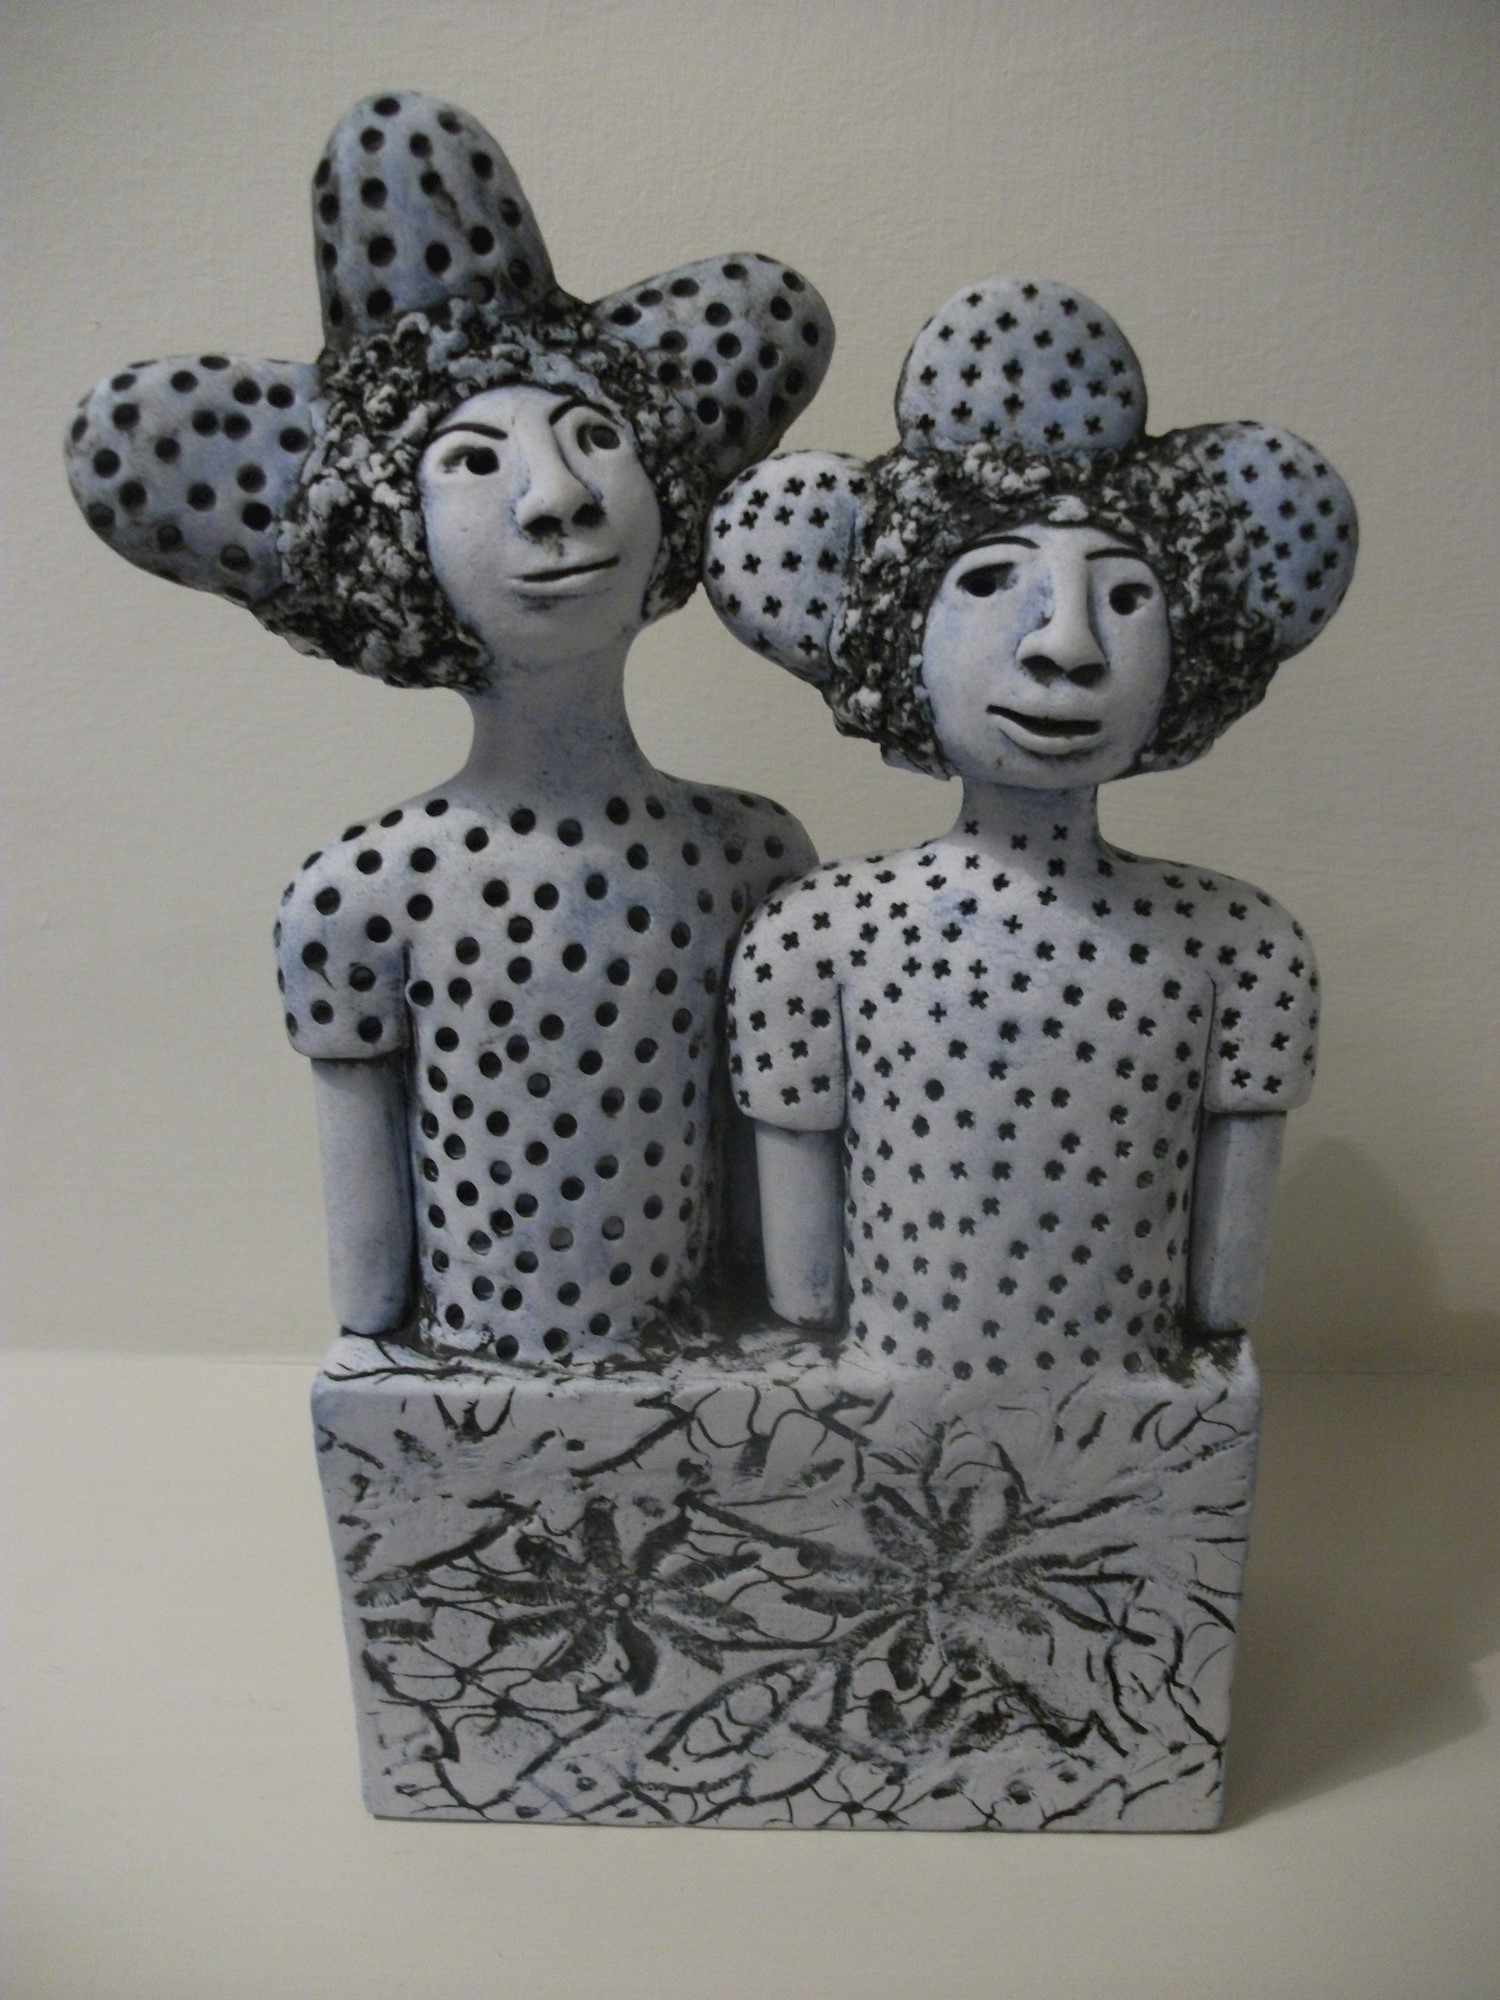 'Mary and Miranda' by artist Gio Martin